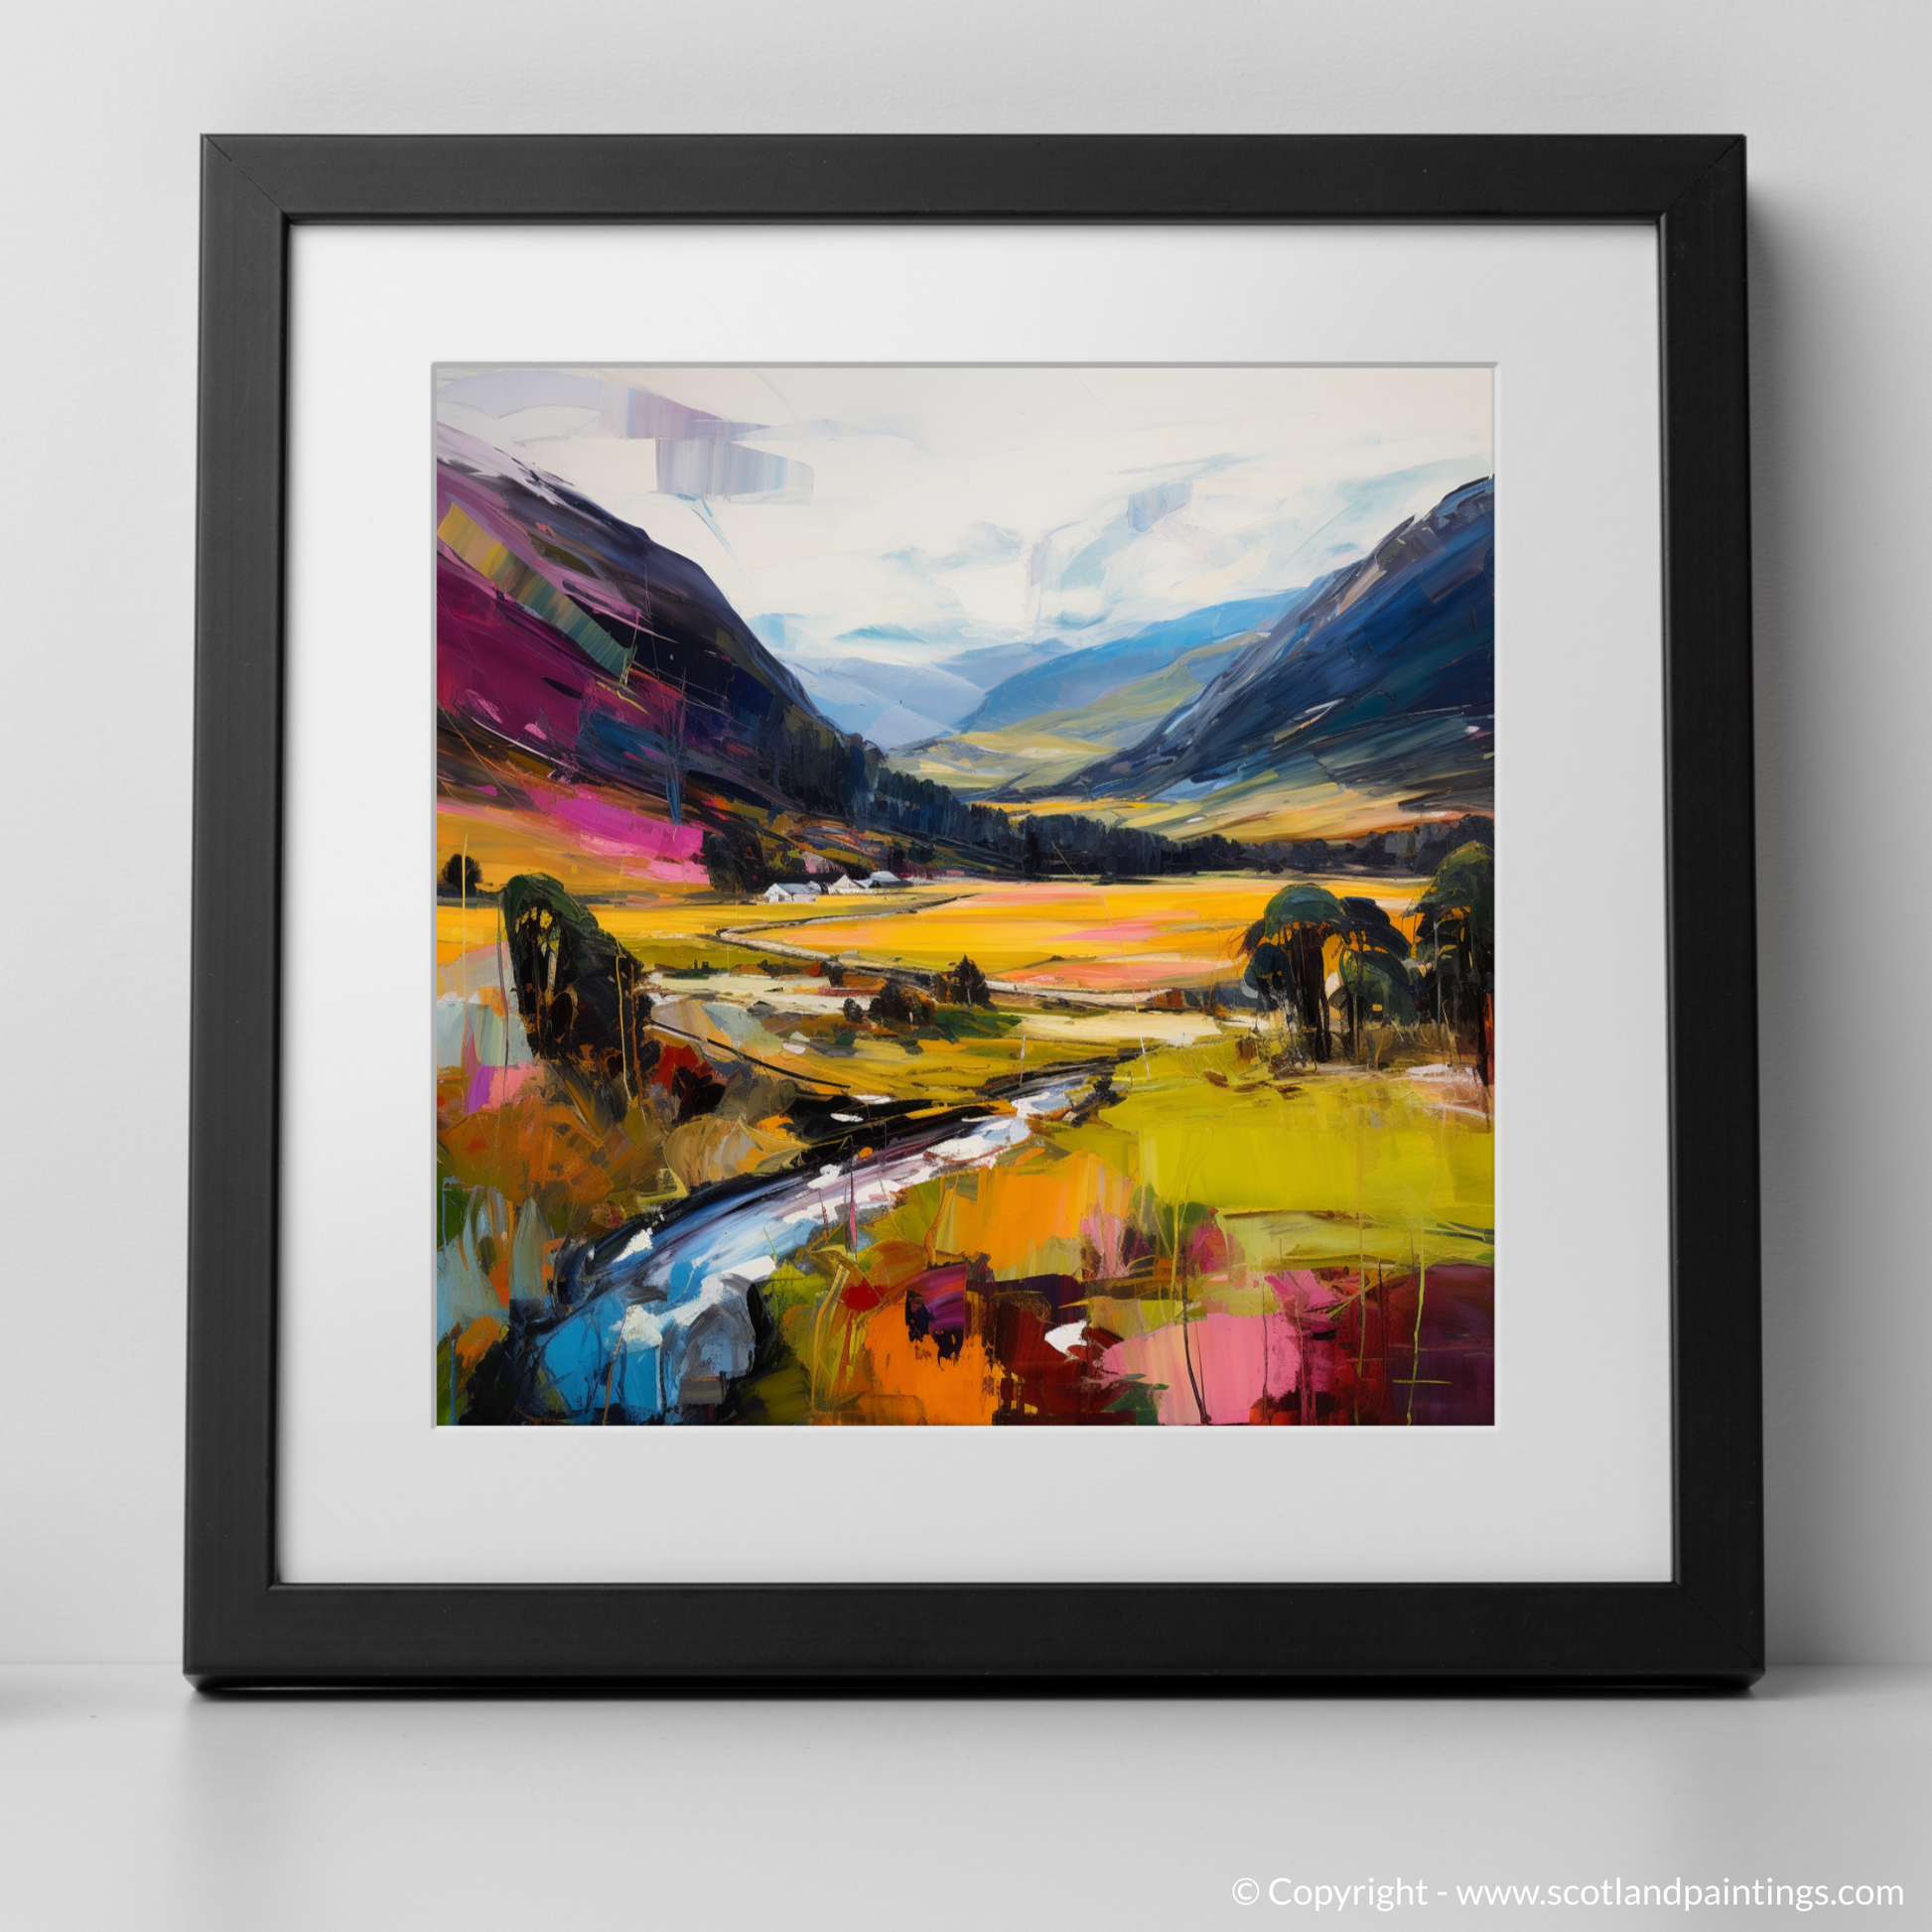 Art Print of Glen Feshie, Highlands with a black frame